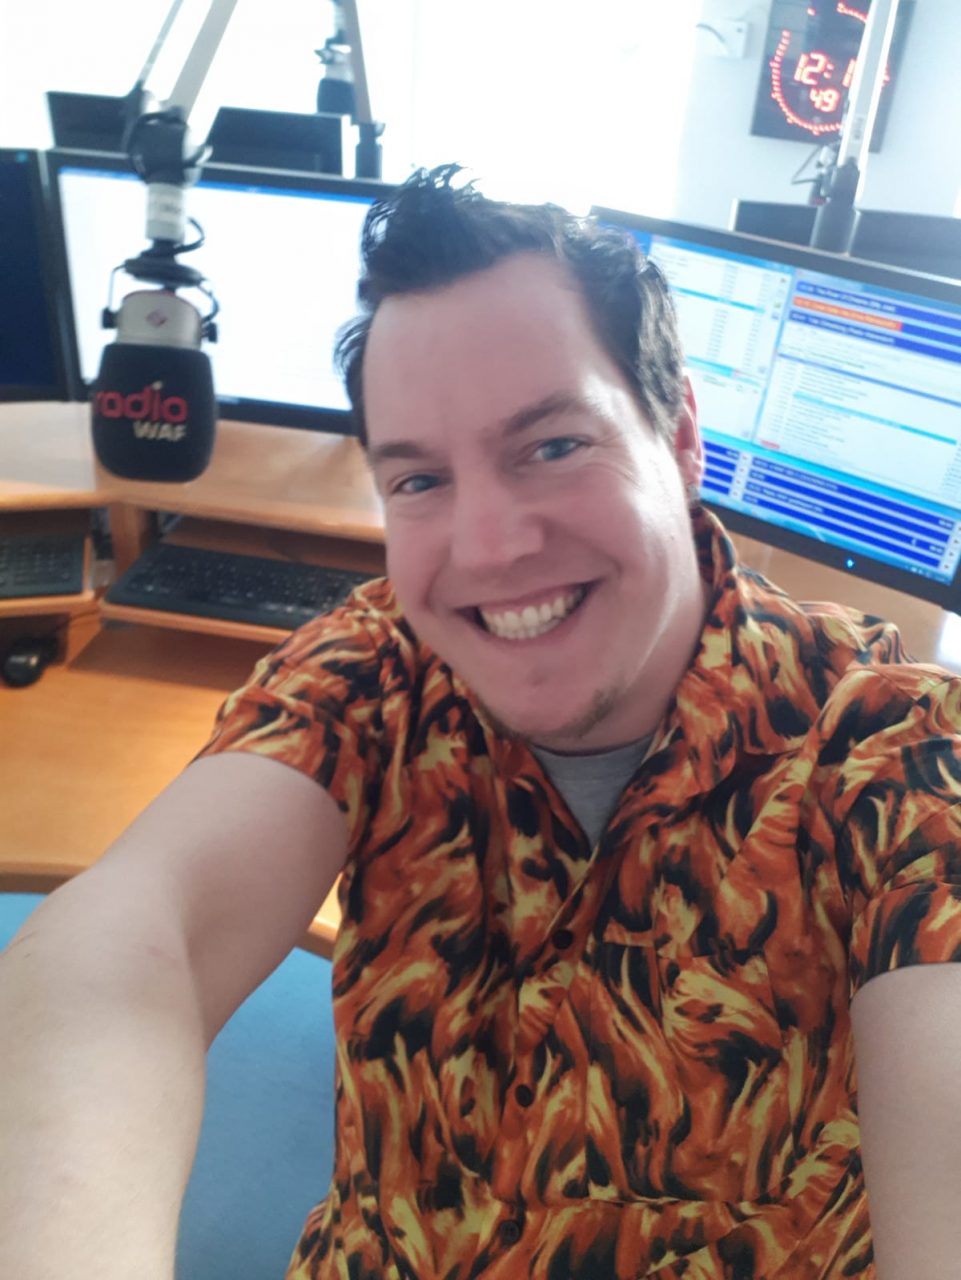 Mike Mathis hat ein Selfie in seinem Radiostudio bei Radio WAF gemacht.